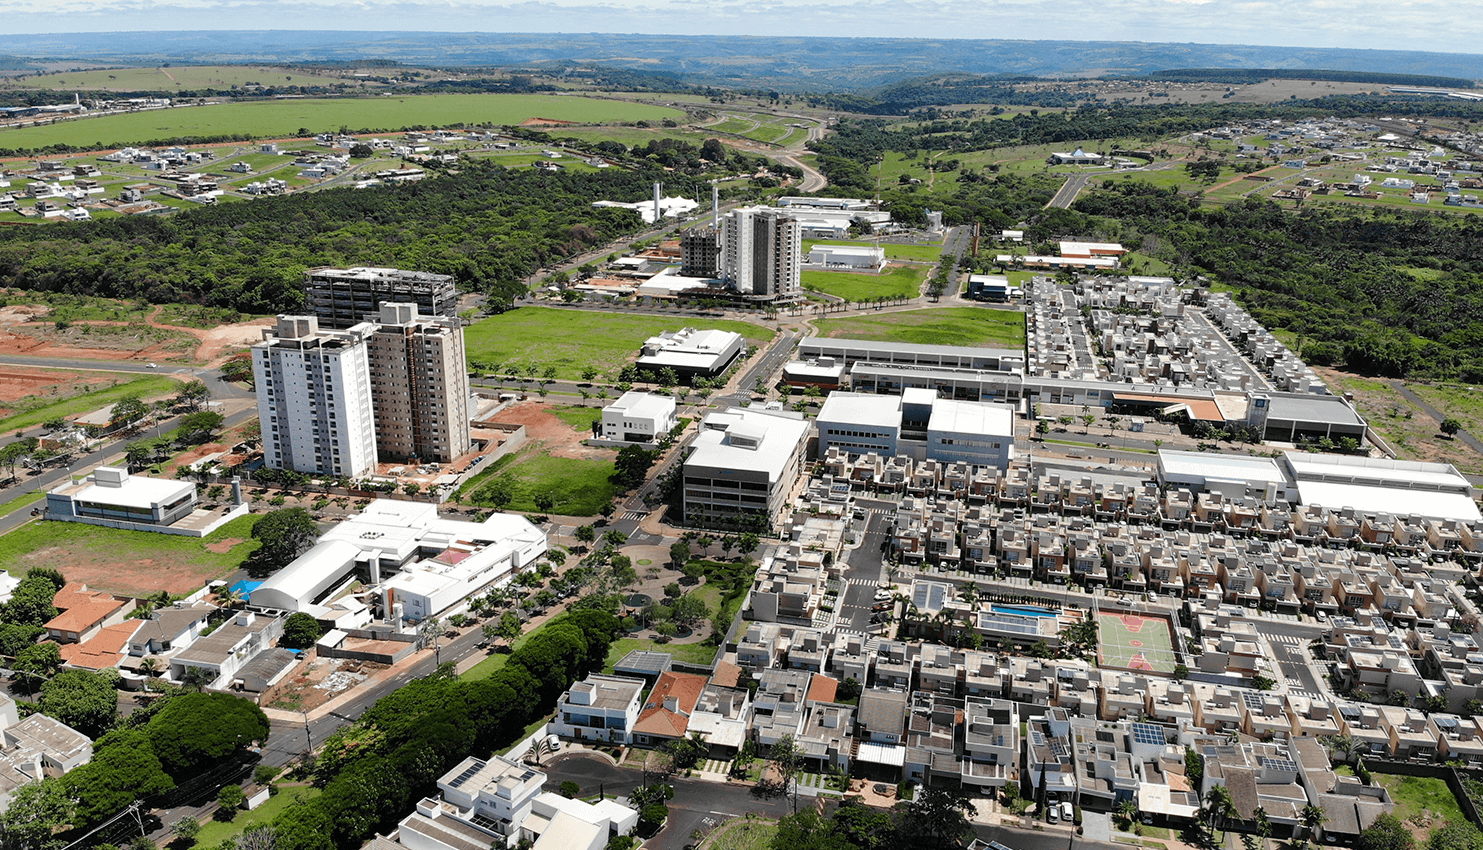 Foto aérea do bairro planejado Granja Marileusa em 2021.